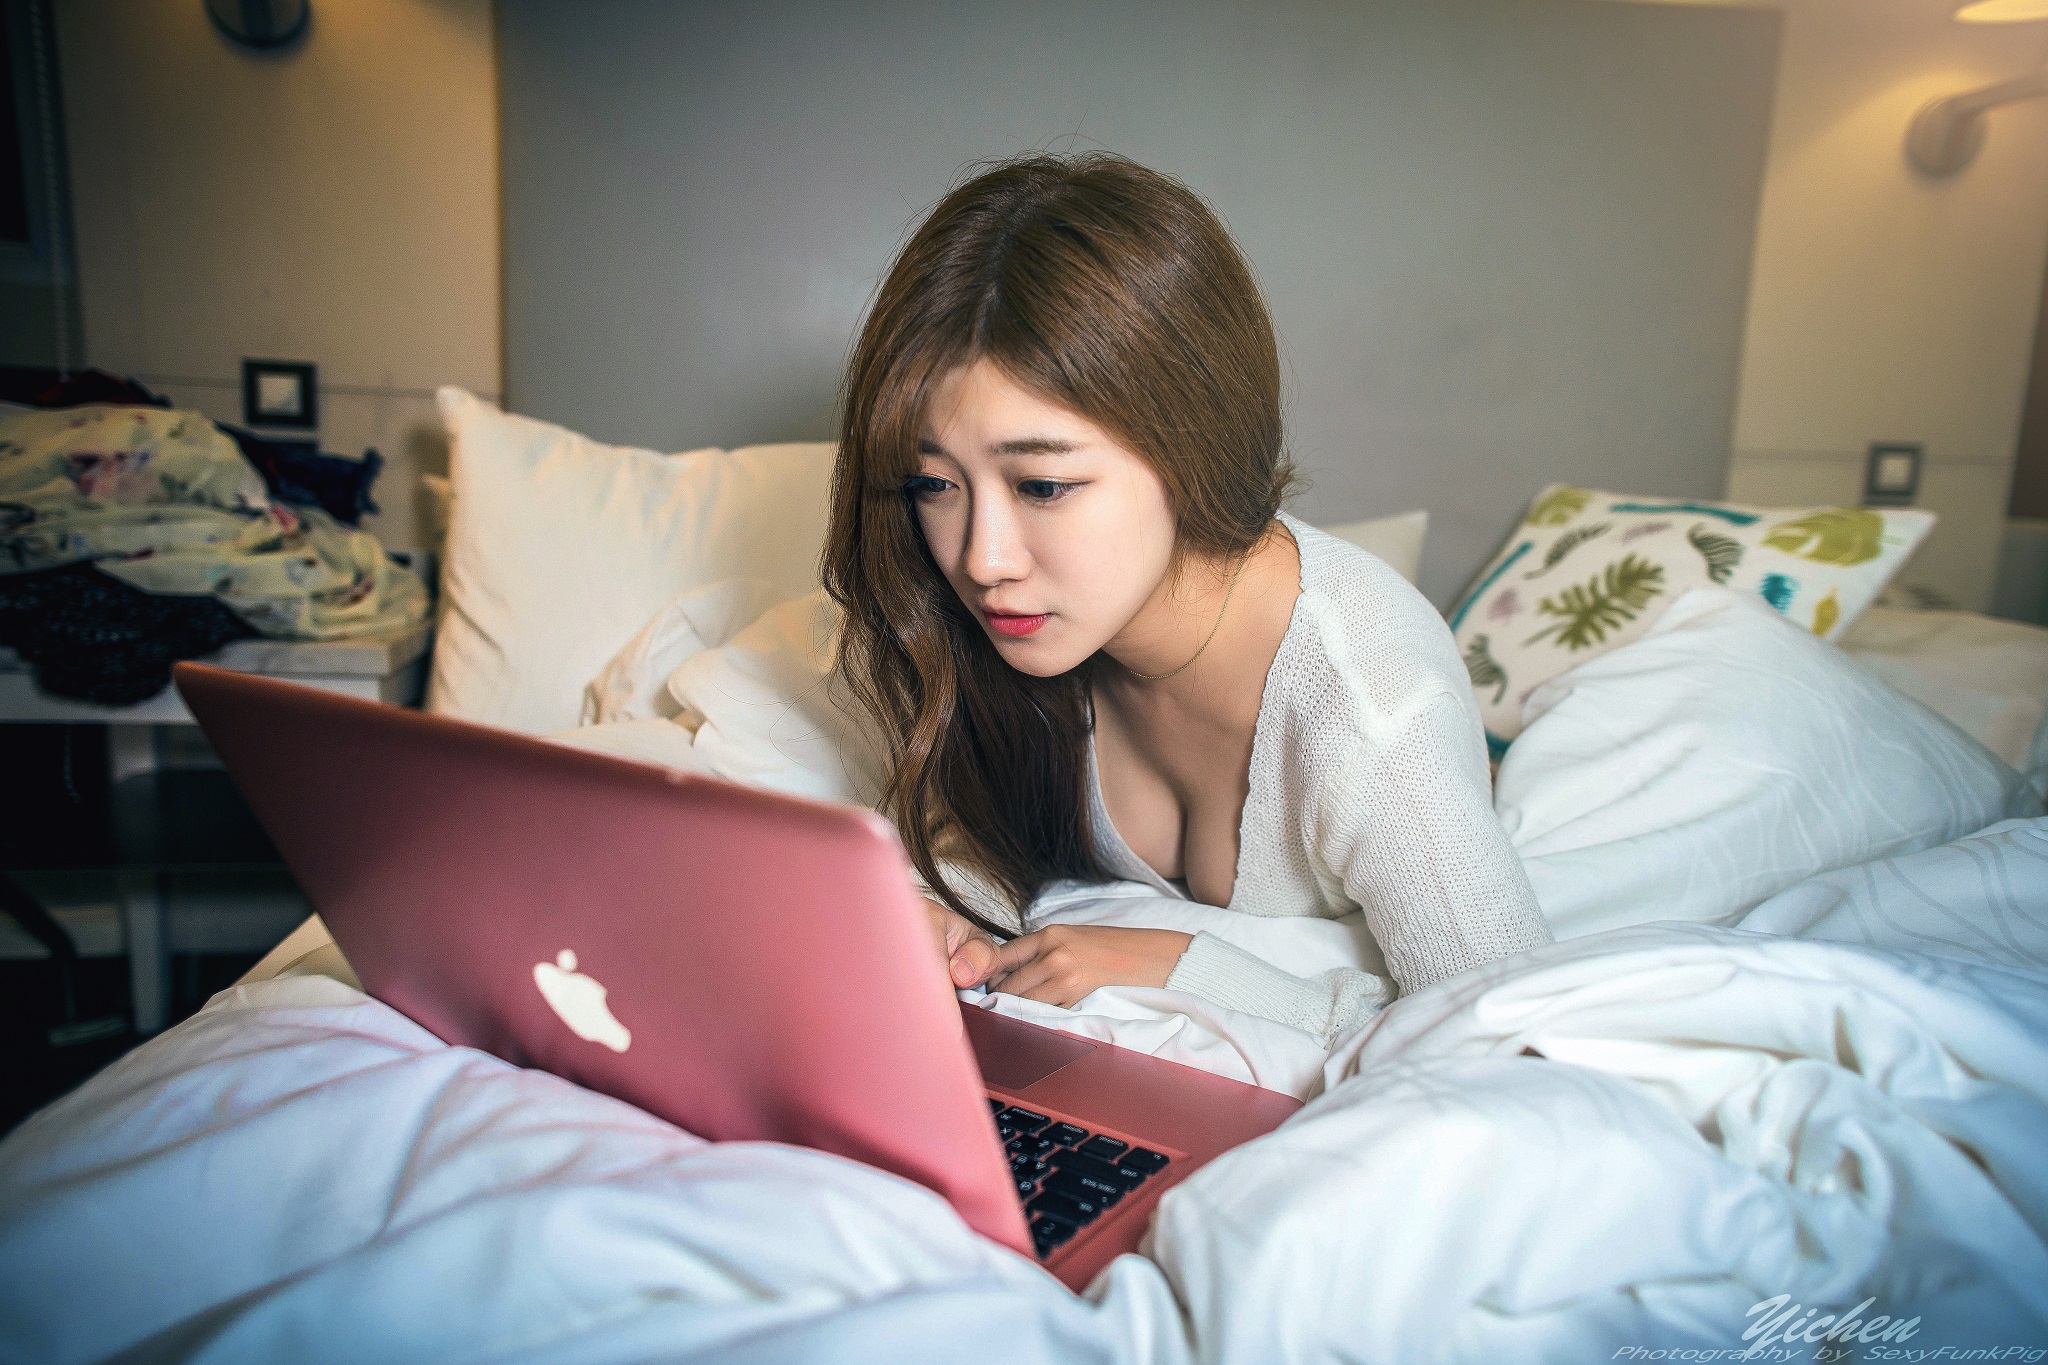 Women Model Asian Brunette Pillow Laptop Apple Inc MacBook Necklace Depth Of Field Portrait Women In 2048x1365